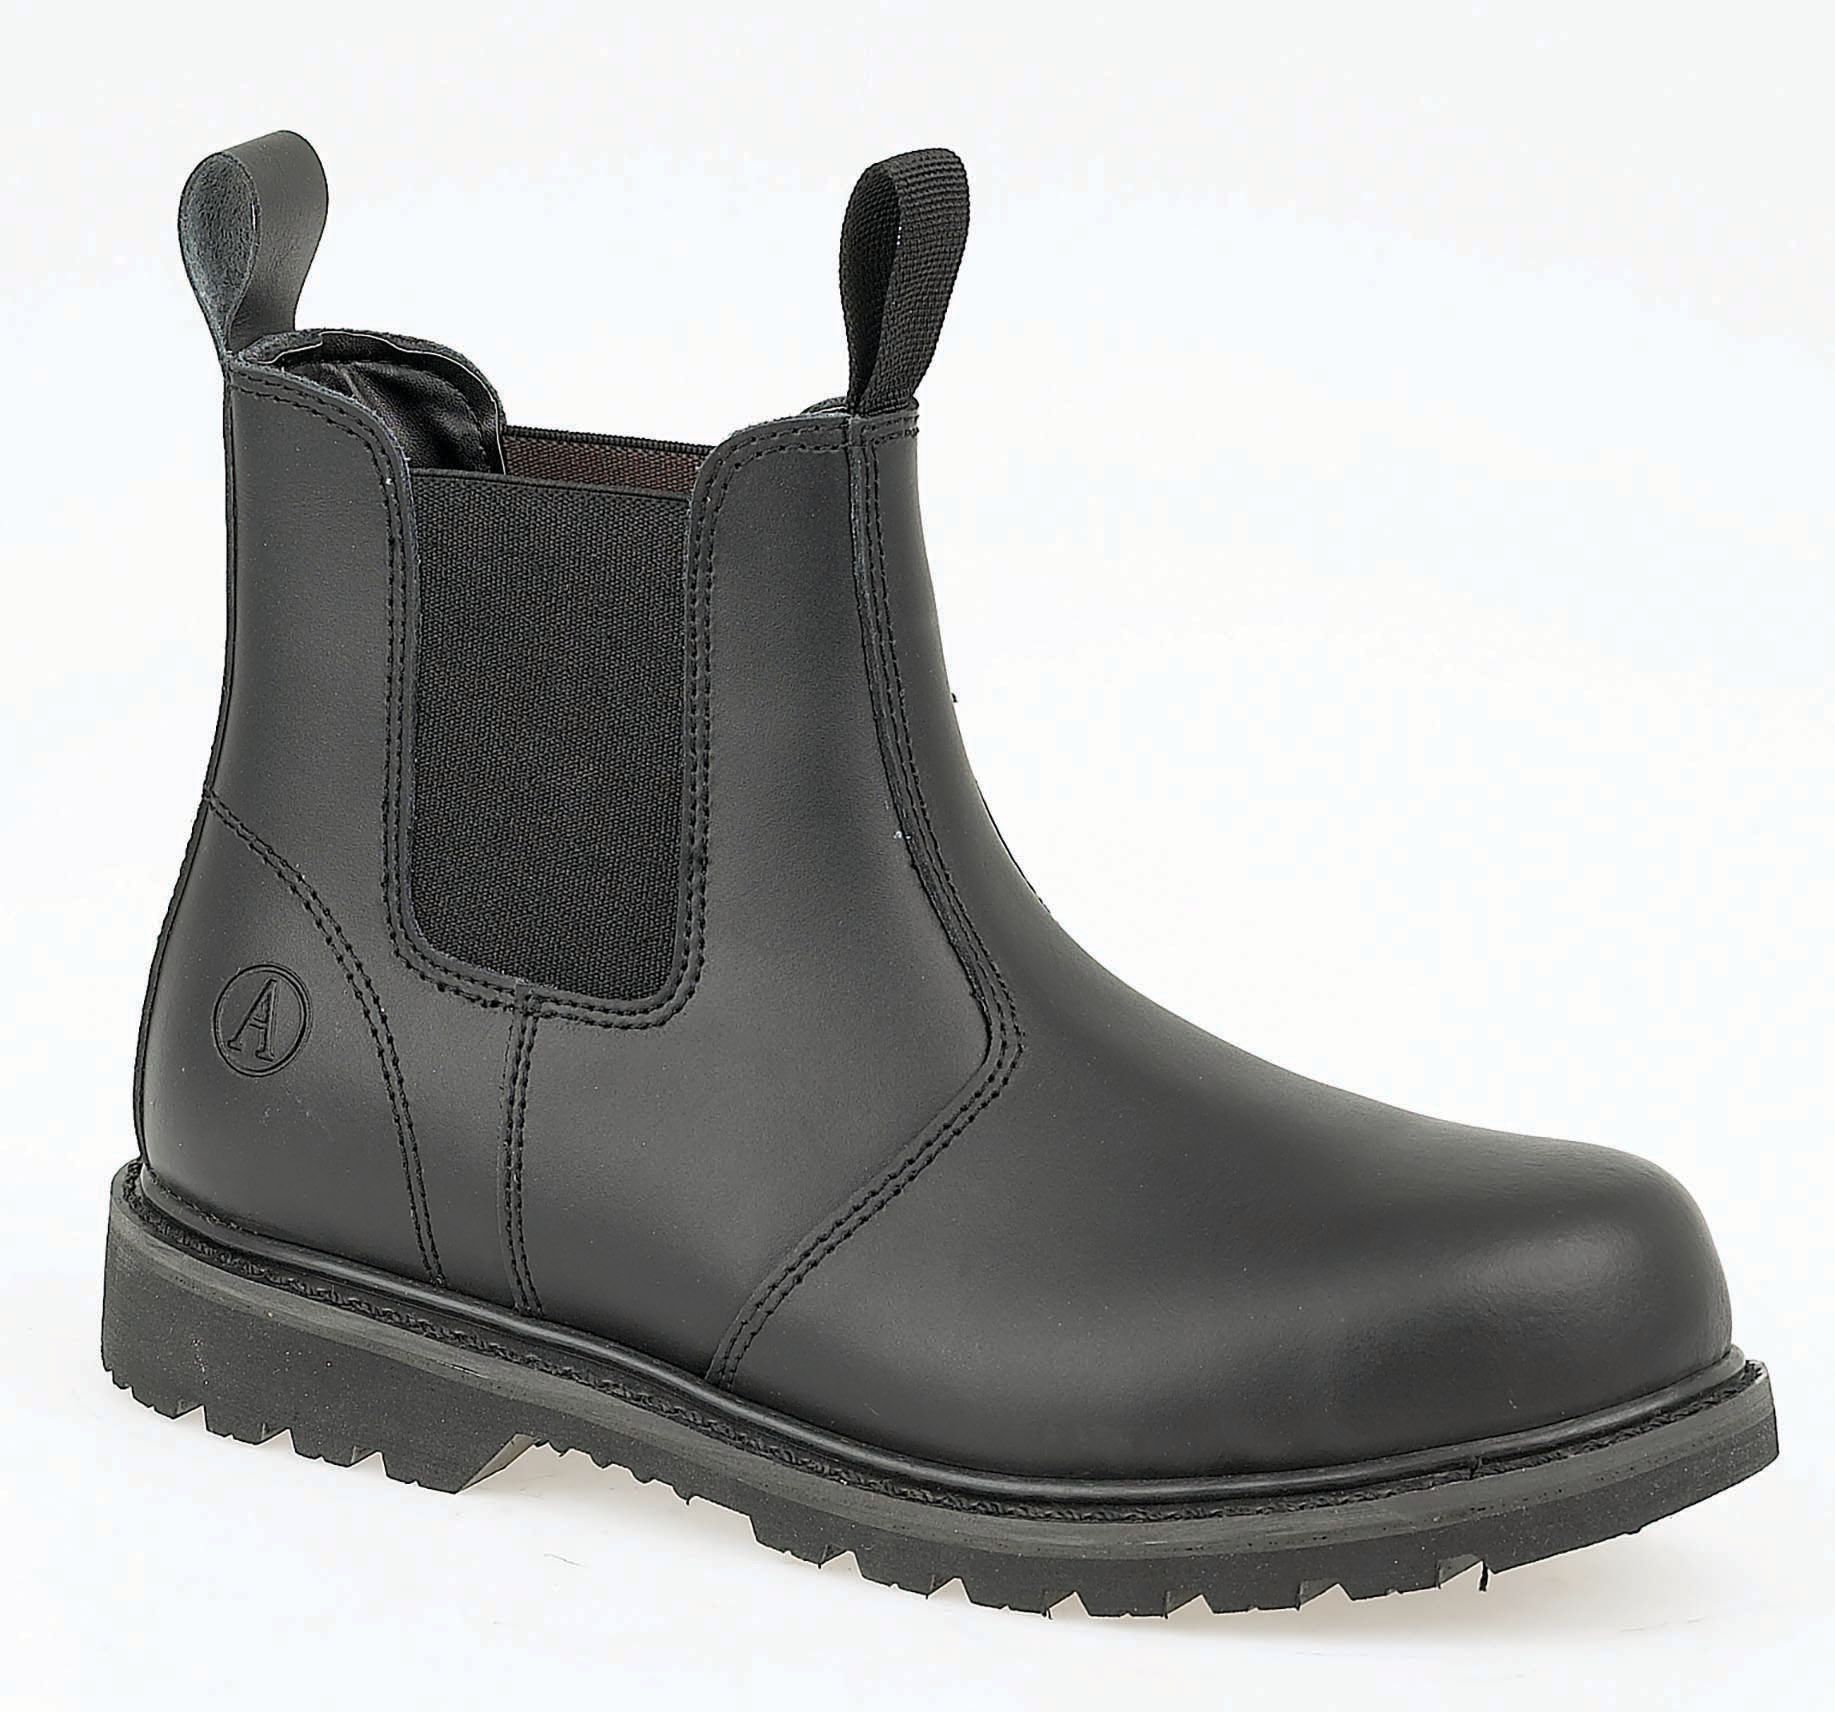 Image of Amblers Safety FS5 Dealer Safety Boot - Black Size 12